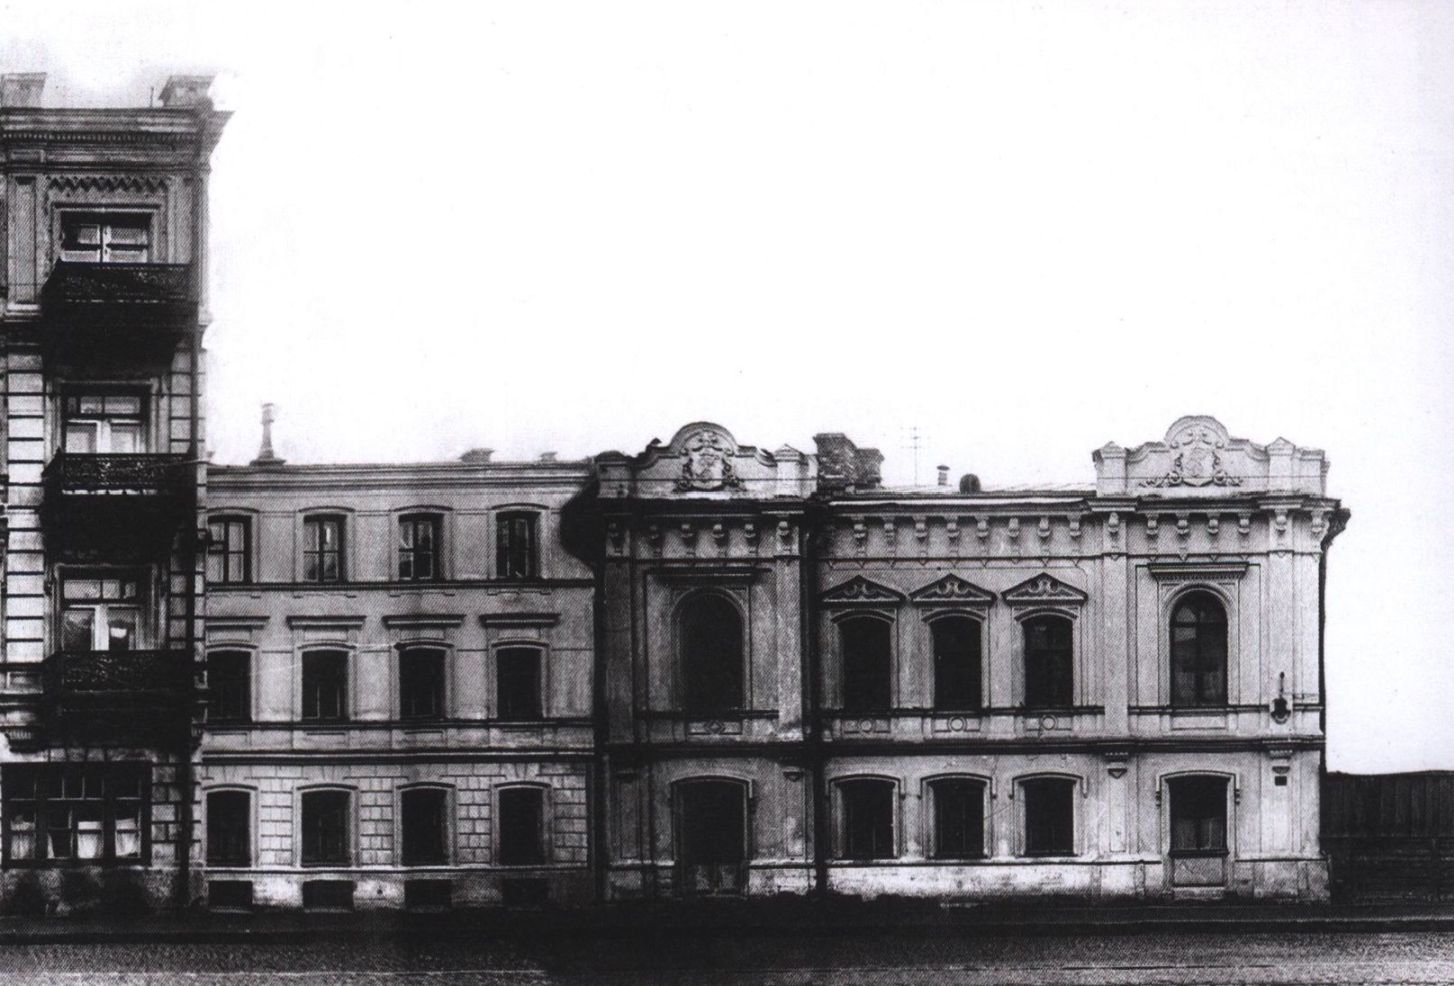 Улица Большая Пироговская, дом 35а. 1930-е гг. Архитектор А.Ф. Стуй в 1920-х годах перестроил бывший особняк купцов Решетниковых, а позже сам поселился в этом доме на втором этаже. Окно кабинета Булгакова — крайнее справа на первом этаже